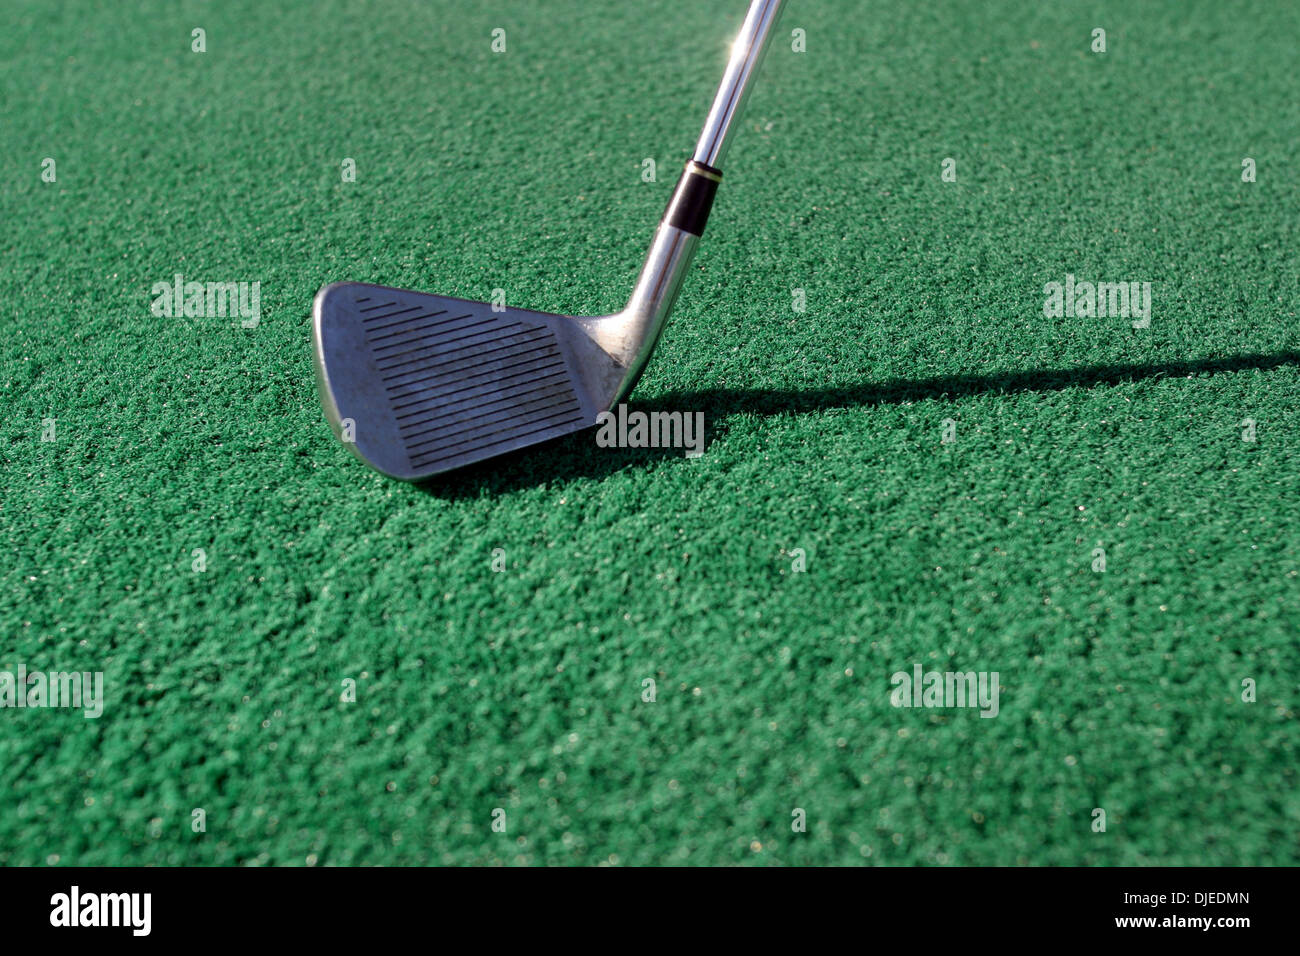 Sep 01, 2004; Los Angeles, Kalifornien, USA; Ein Golfclub und treibende Grün in einem der vielen driving Ranges in Südkalifornien. Spiel des Golfs. Stockfoto